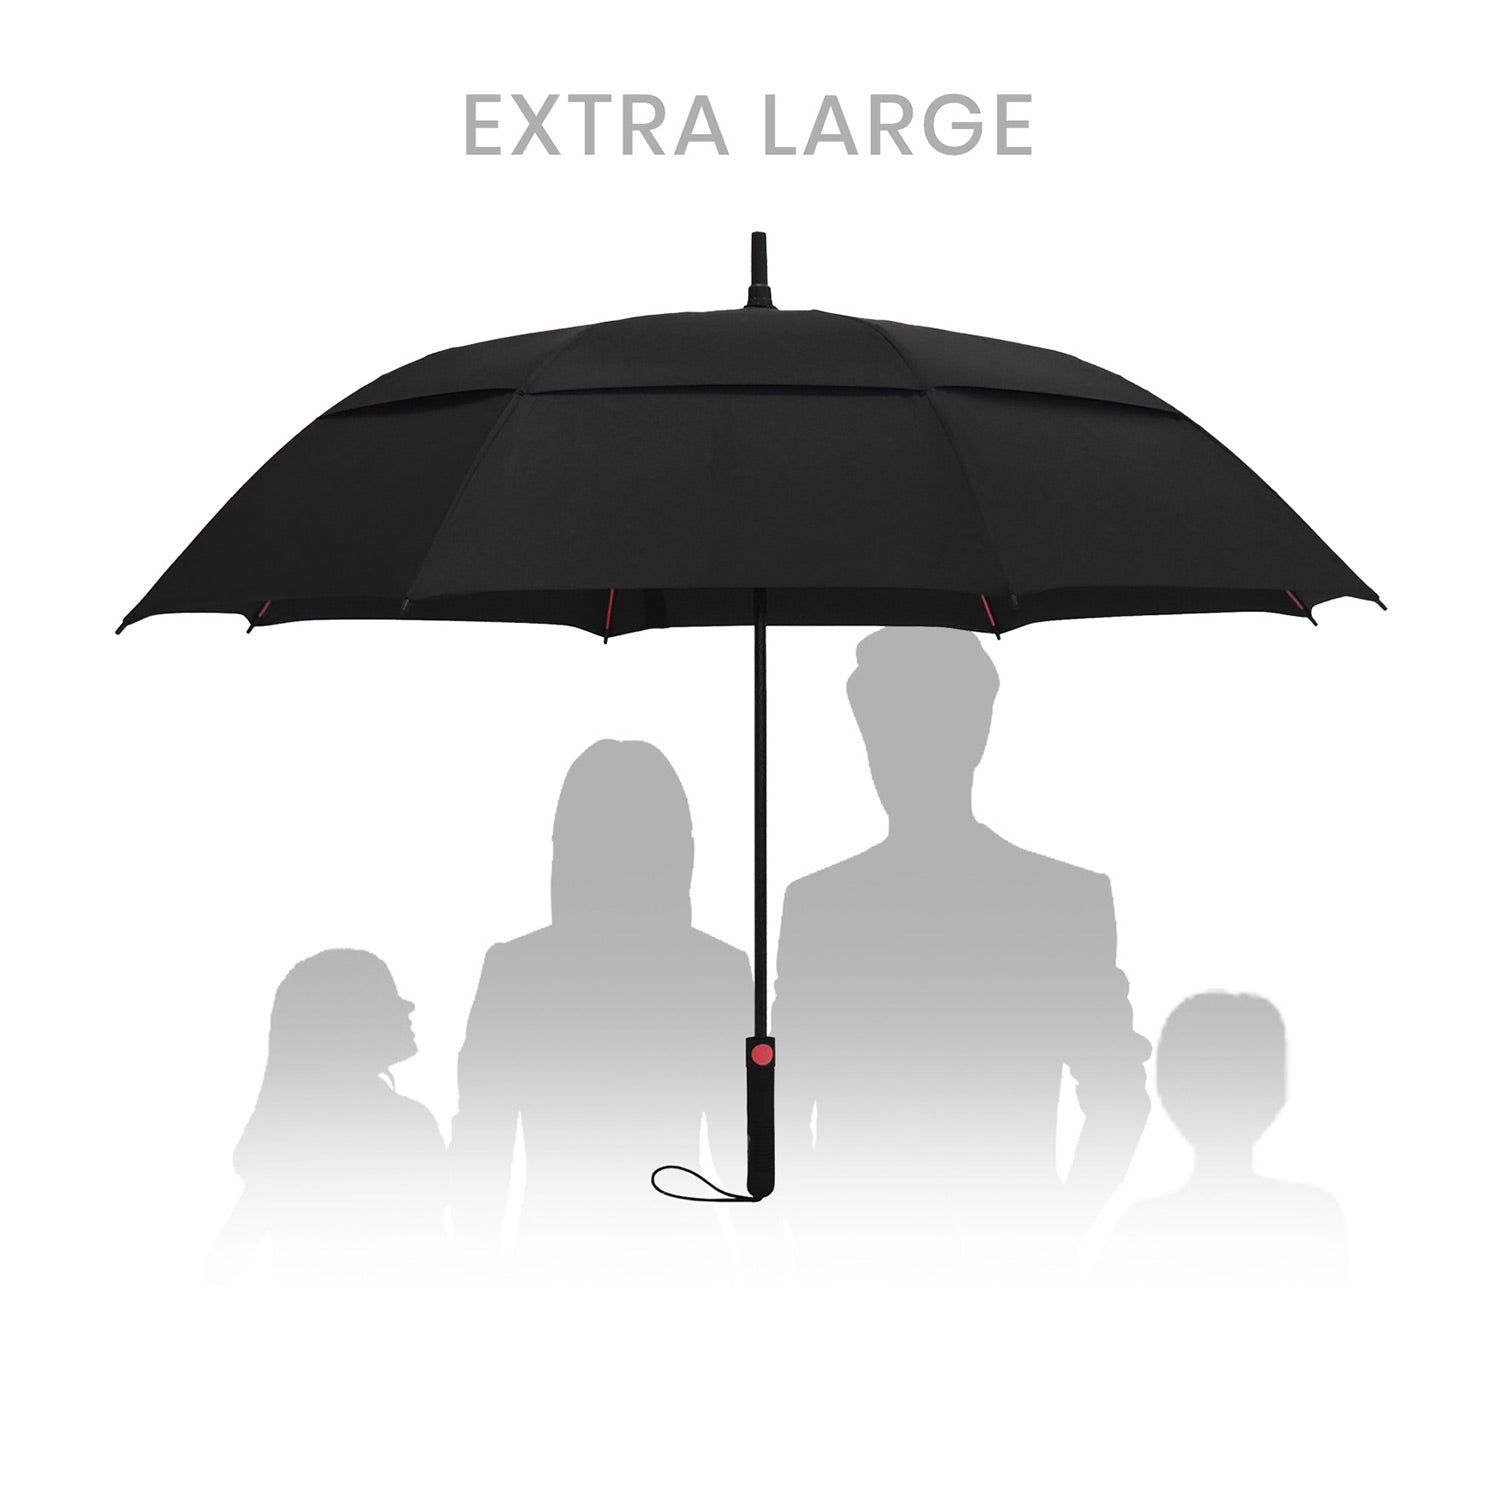 travel umbrella companies